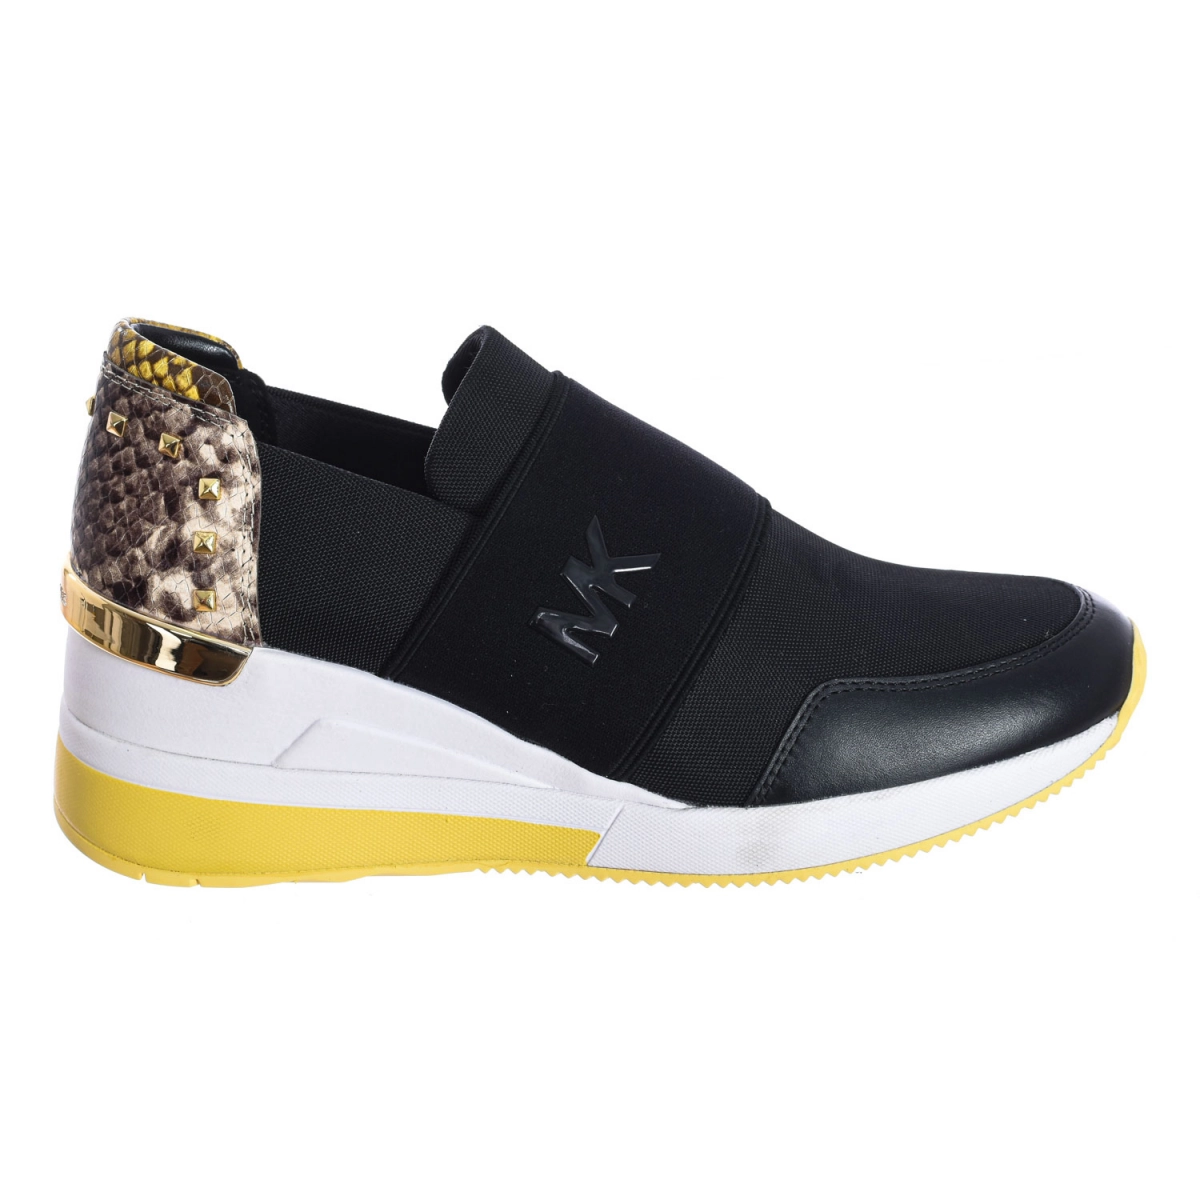 Zapatilla Sneaker Felix sin cordones Michael Kors T1FXFS1D mujer Talla: 37 Color: Negro T1FXFS1D-BLACK.37